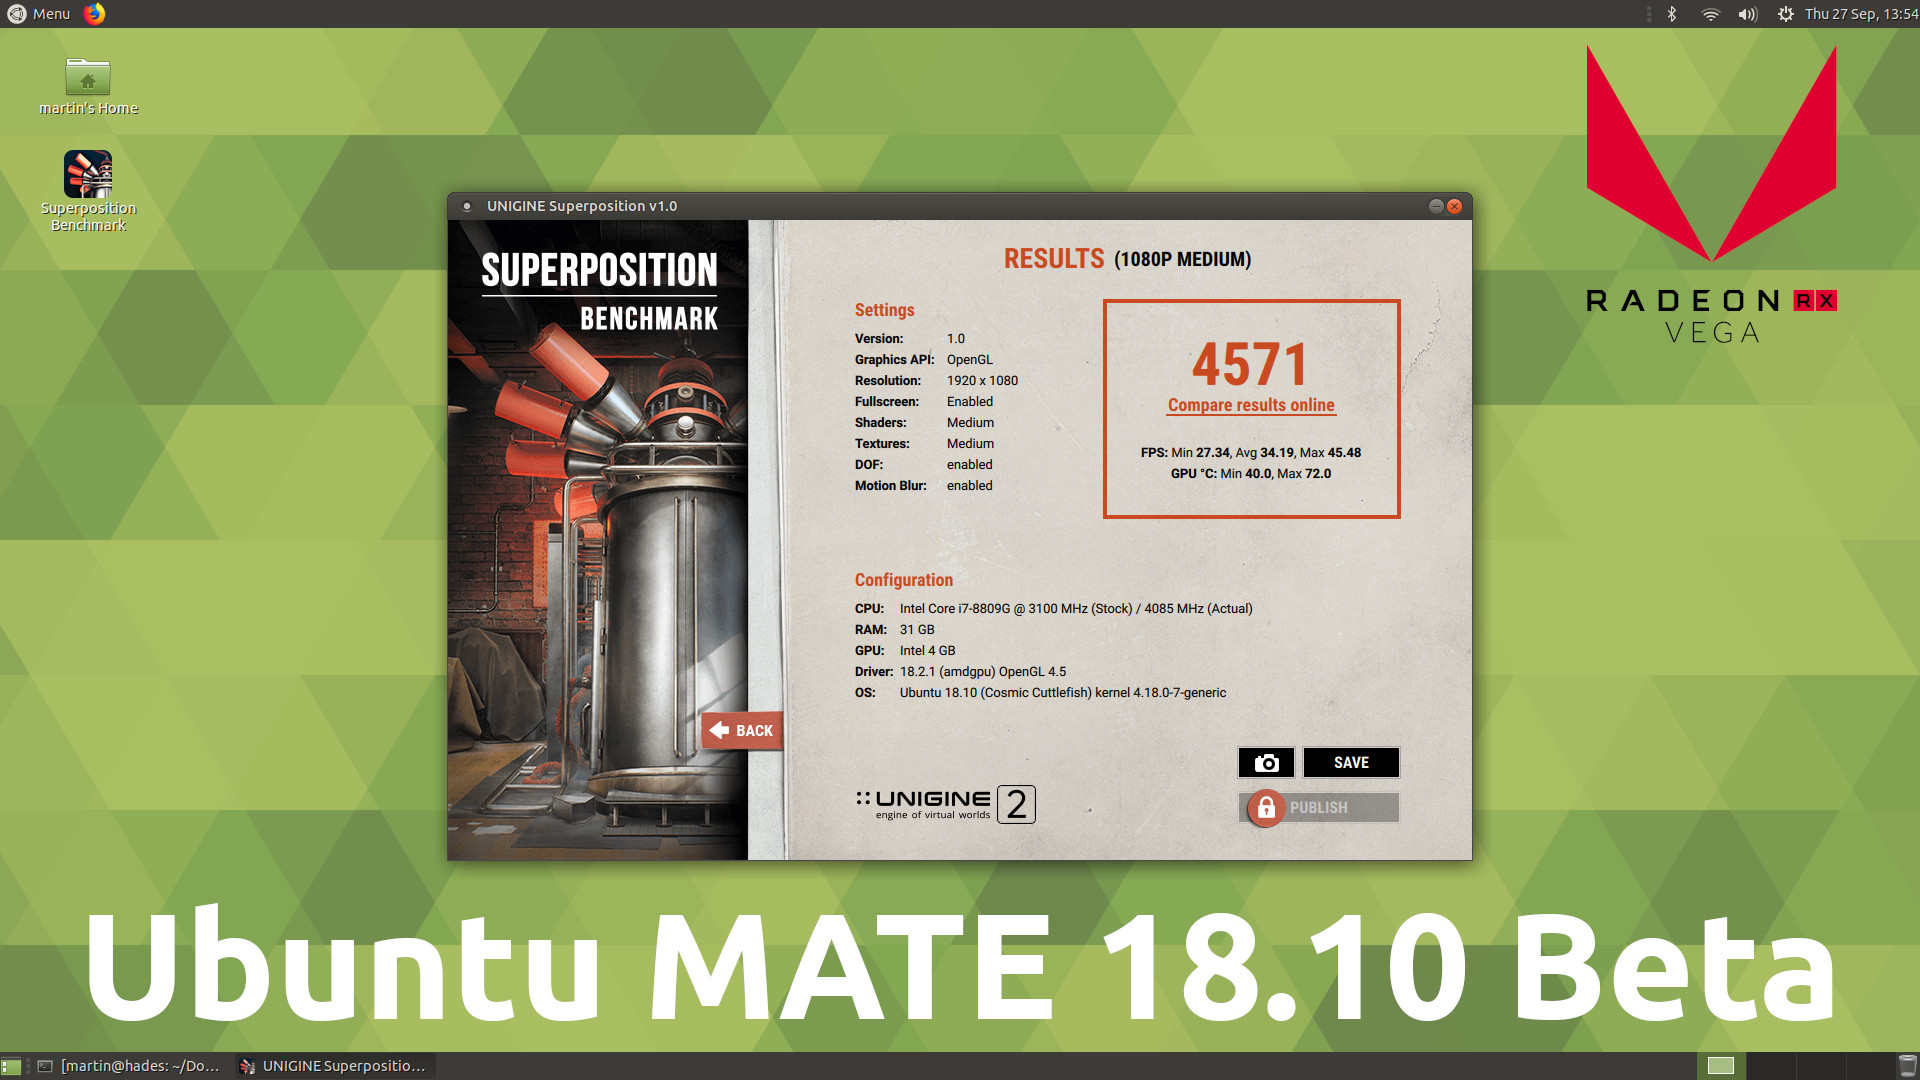 Ubuntu MATE 18.10 Beta